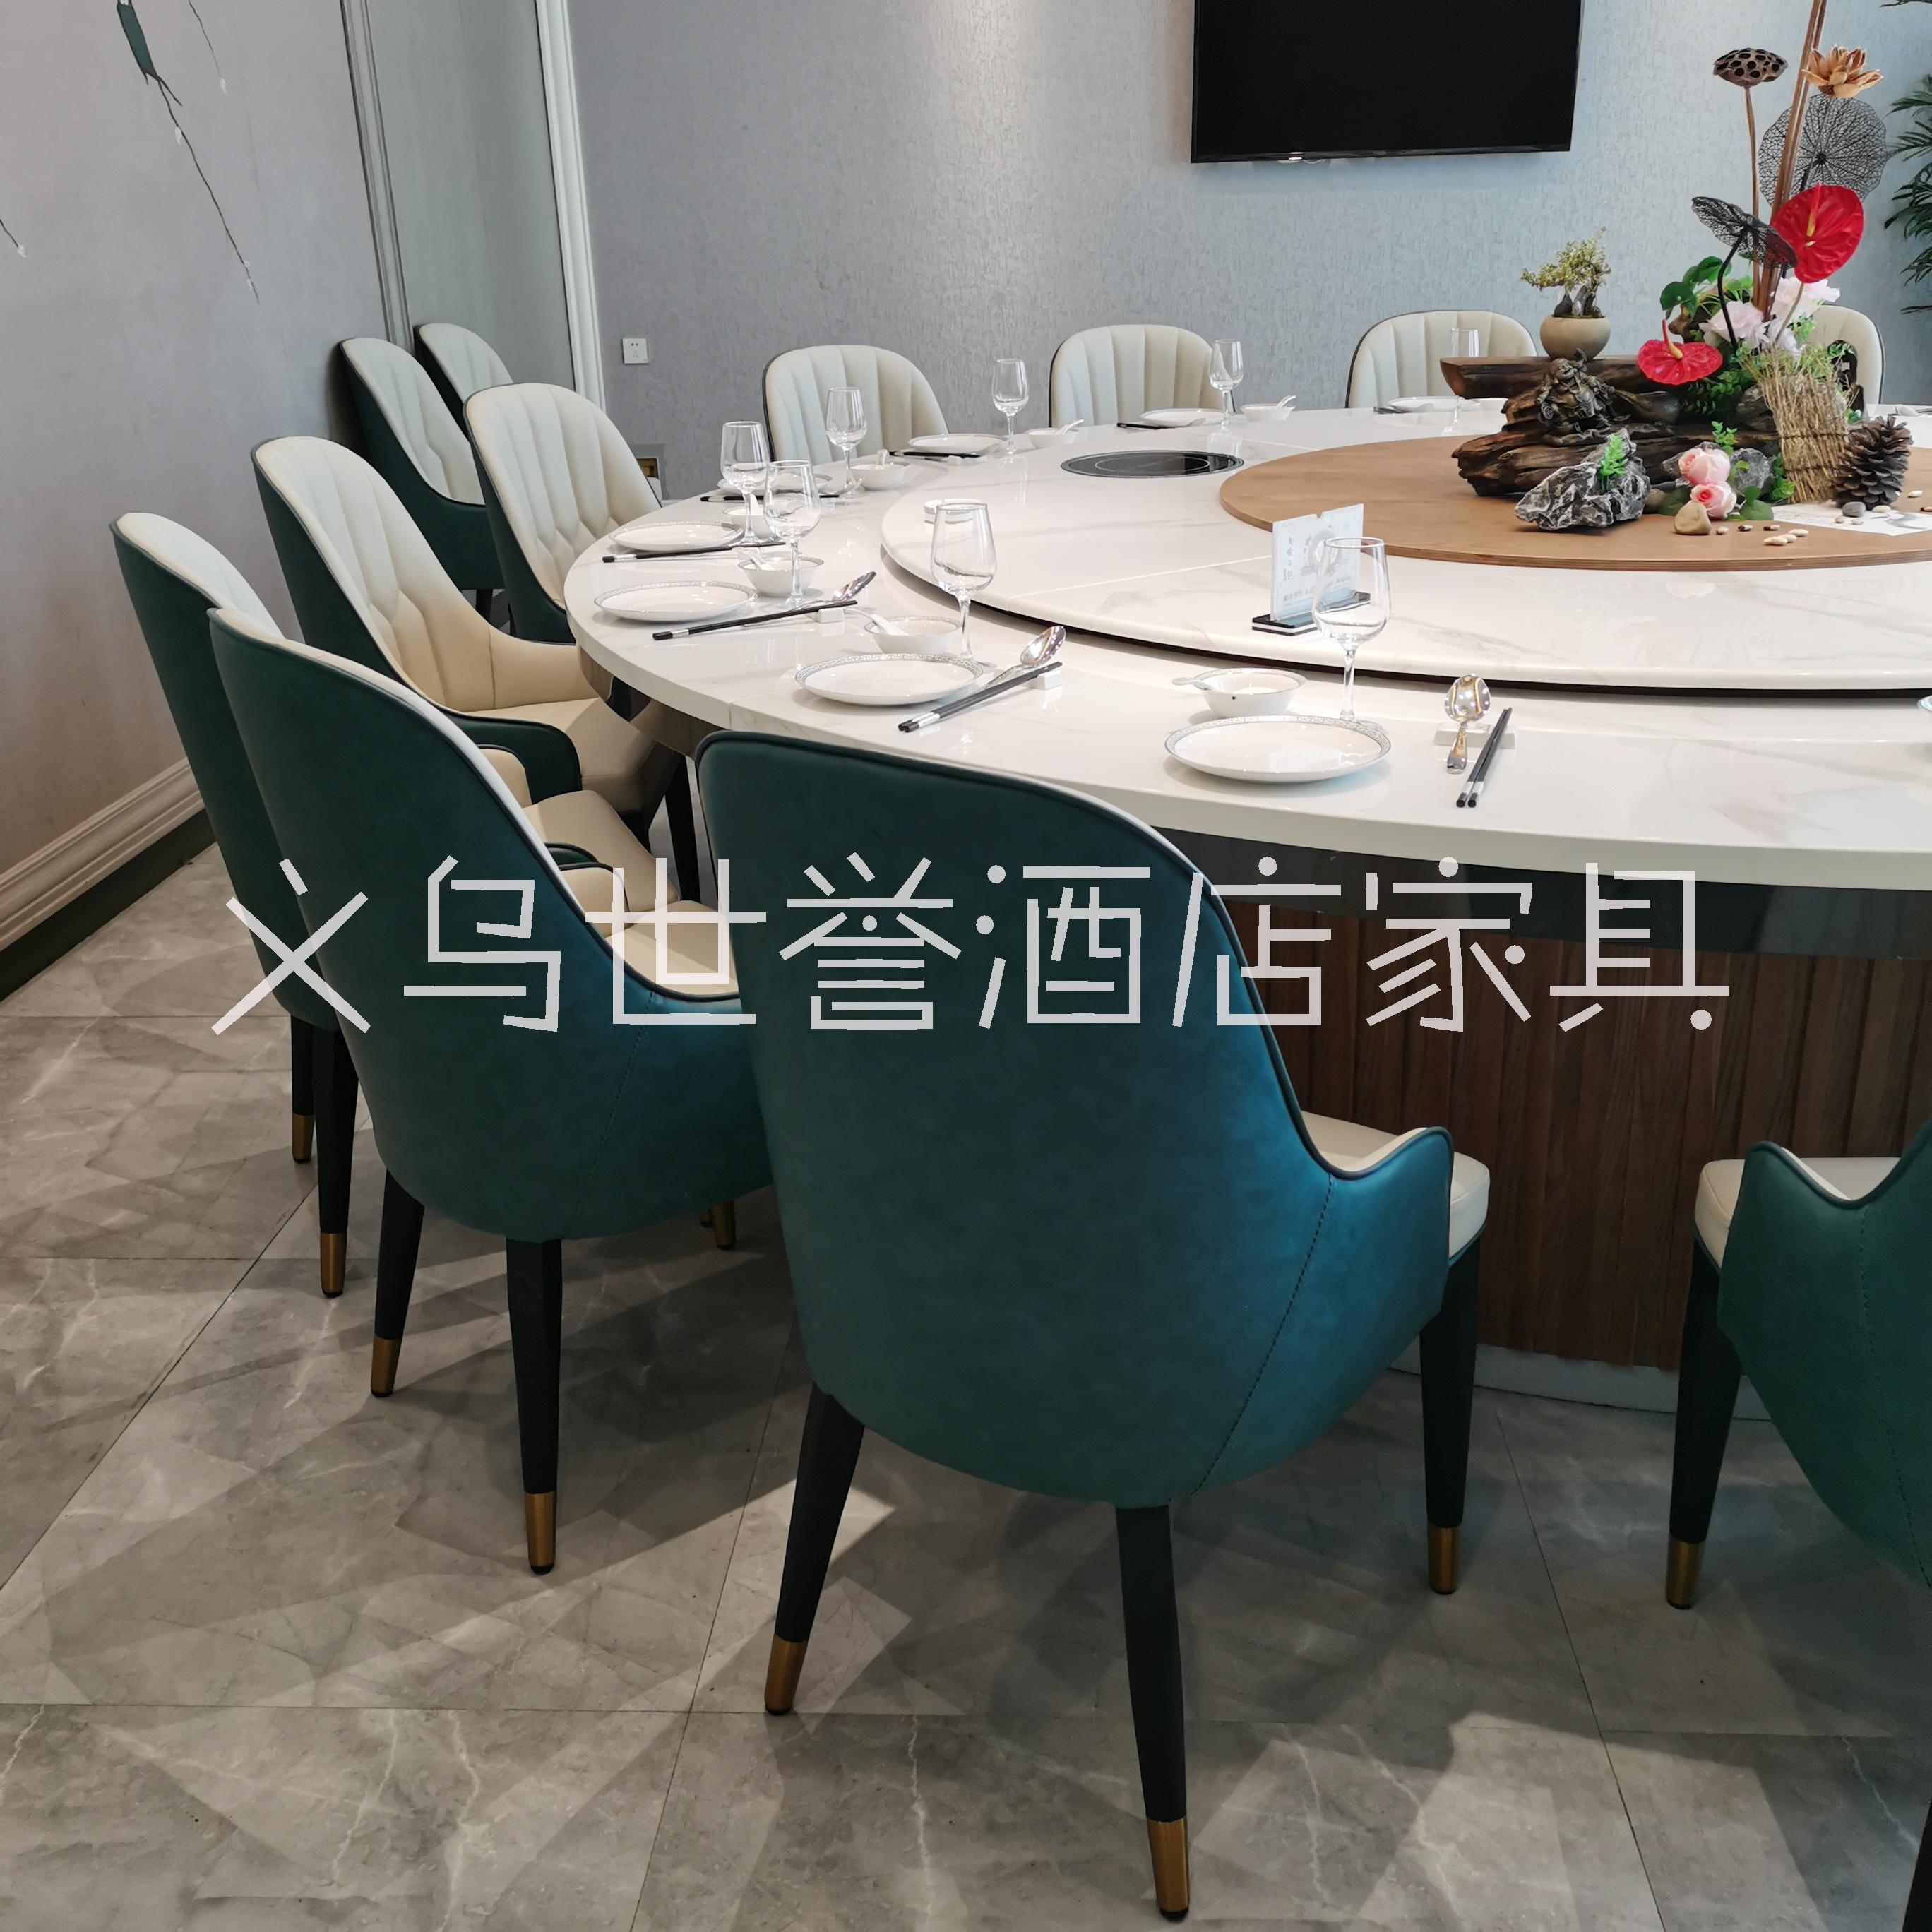 上海酒店包厢餐桌椅定做 餐馆现代轻奢菠萝椅 饭店餐厅椅子